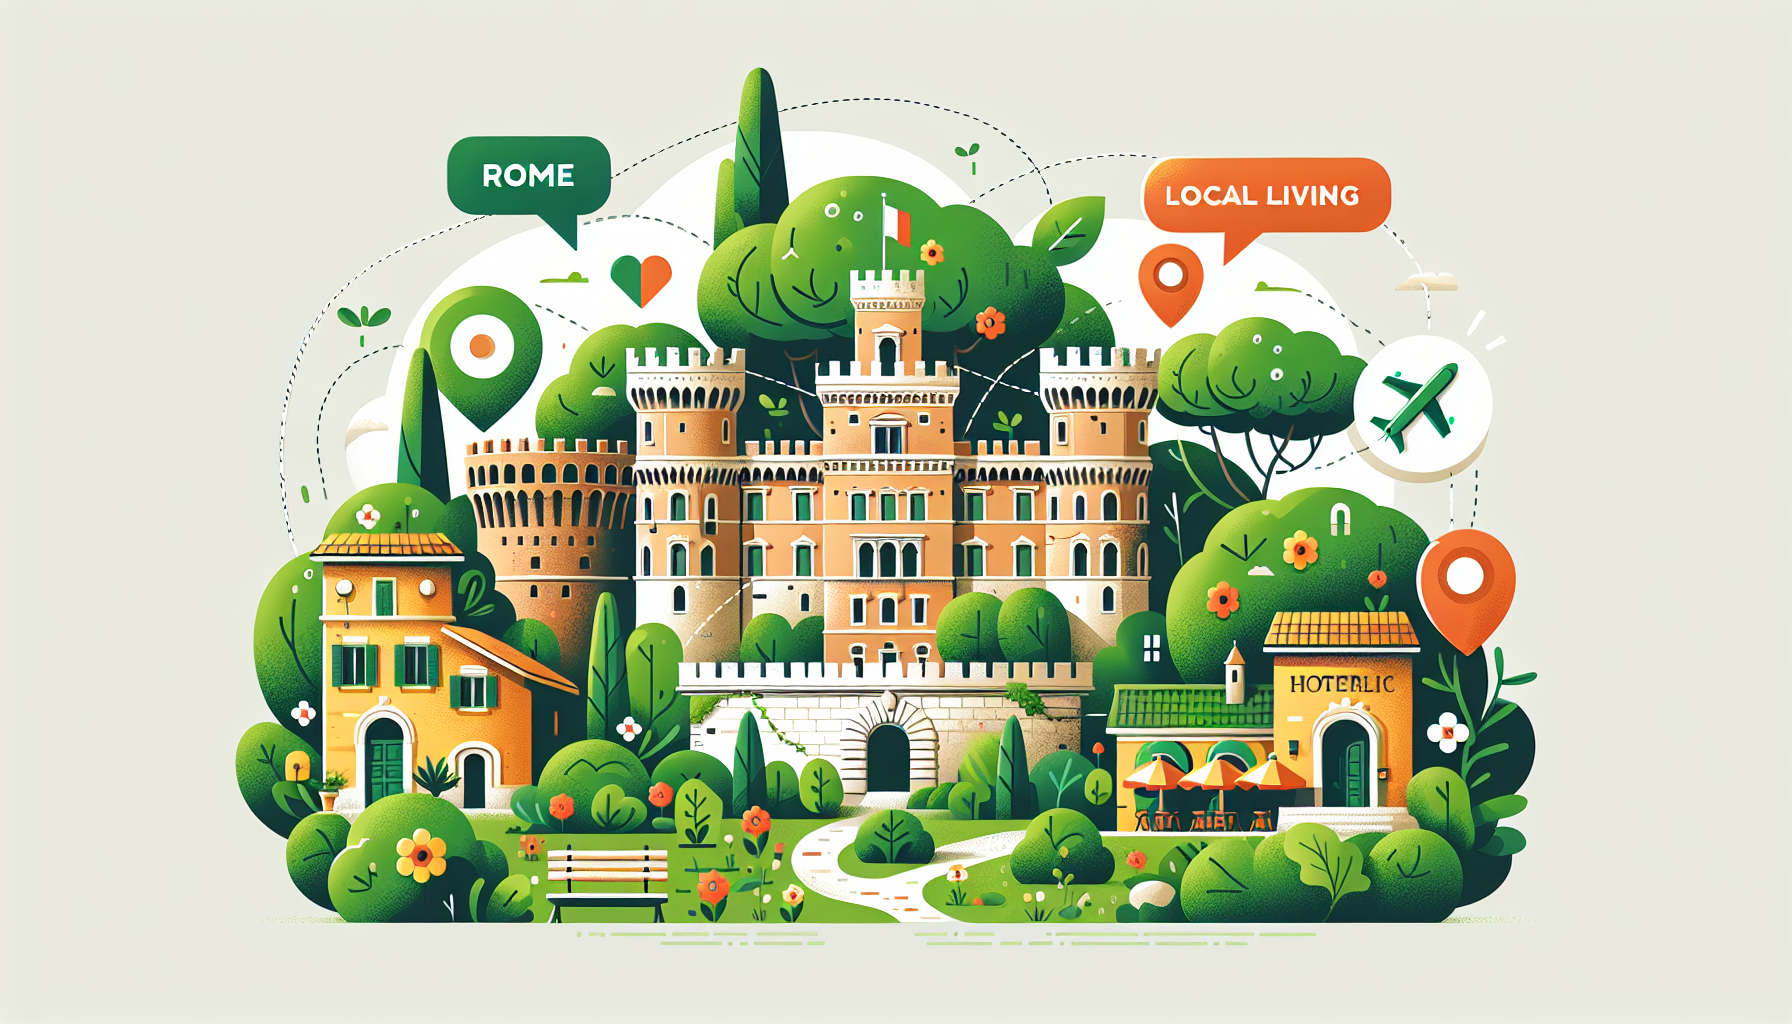 découvrez les meilleurs quartiers pour séjourner dans un hôtel à rome et profiter au maximum de votre séjour dans la ville éternelle.